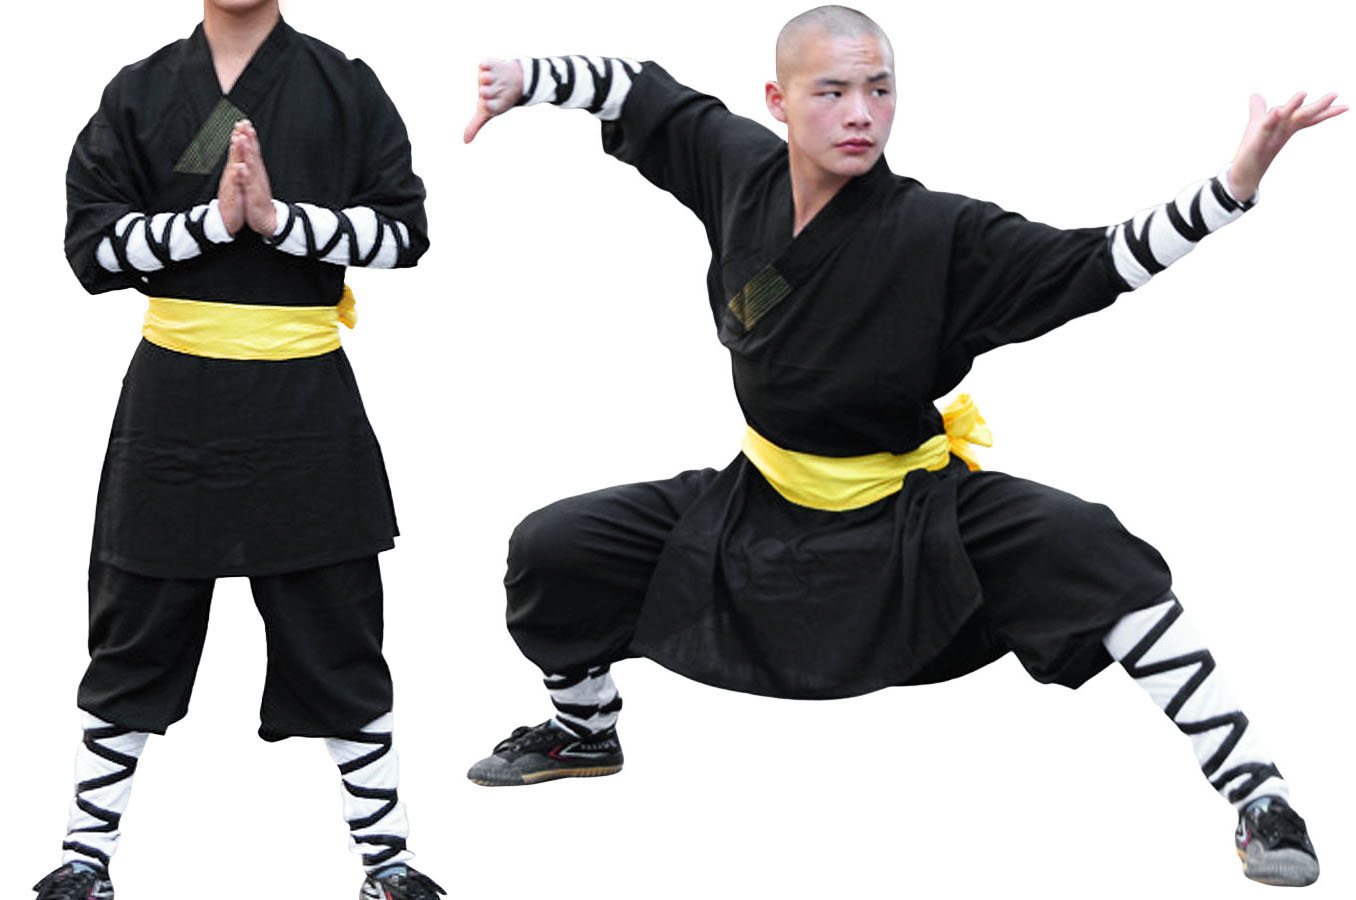 Shaolin Kung-Fu  Kung fu martial arts, Martial arts styles